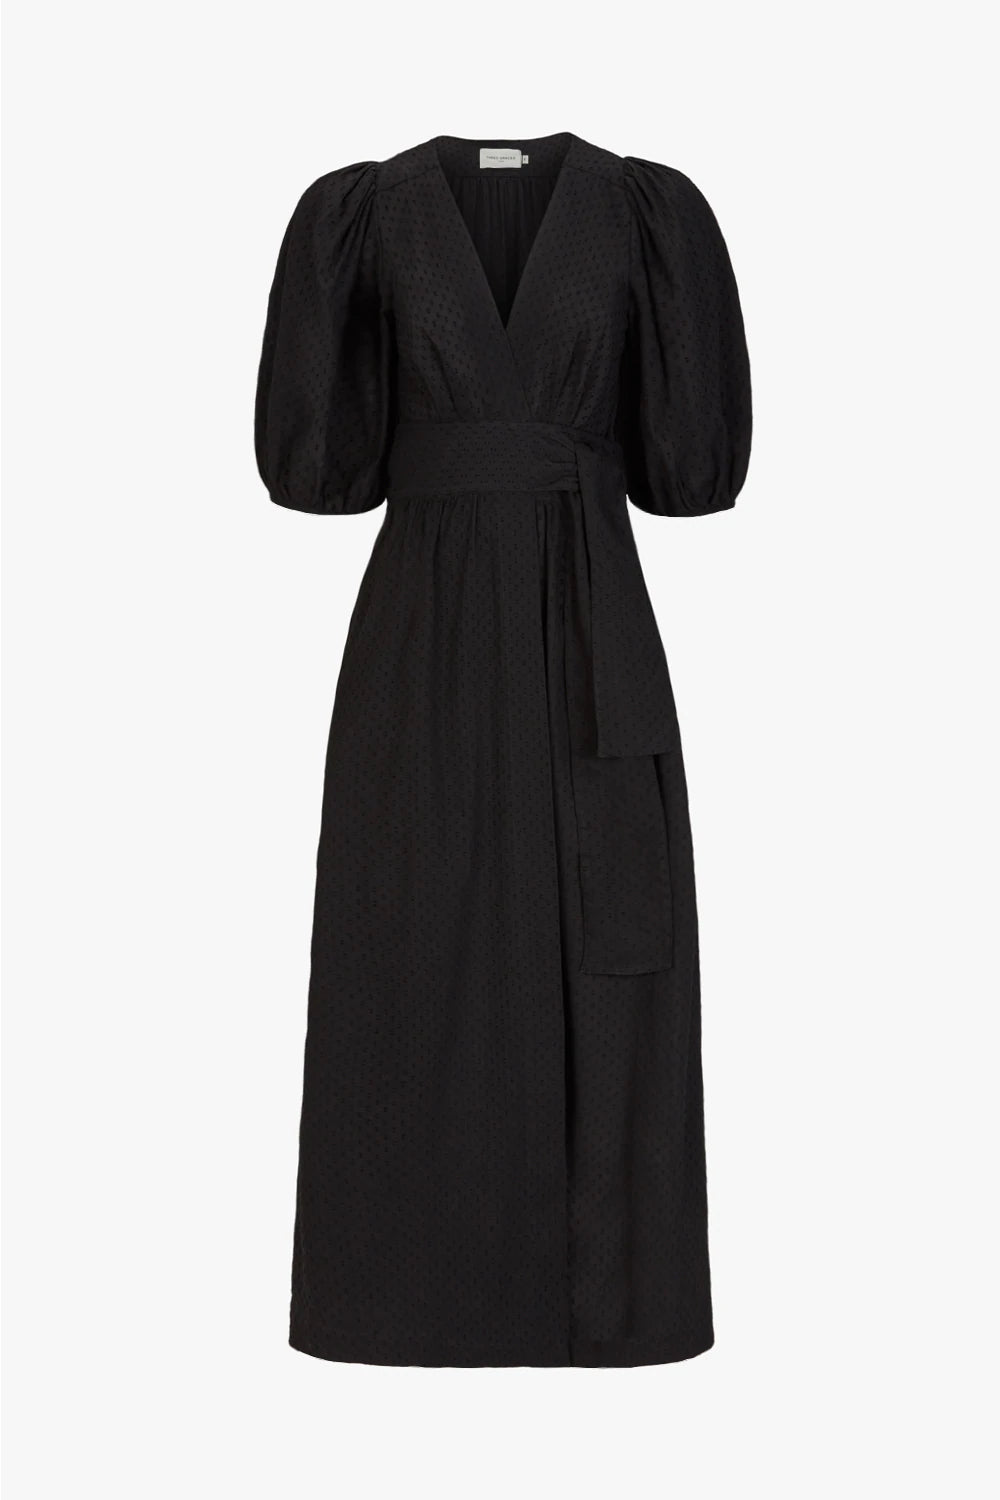 Browyn Dress Black